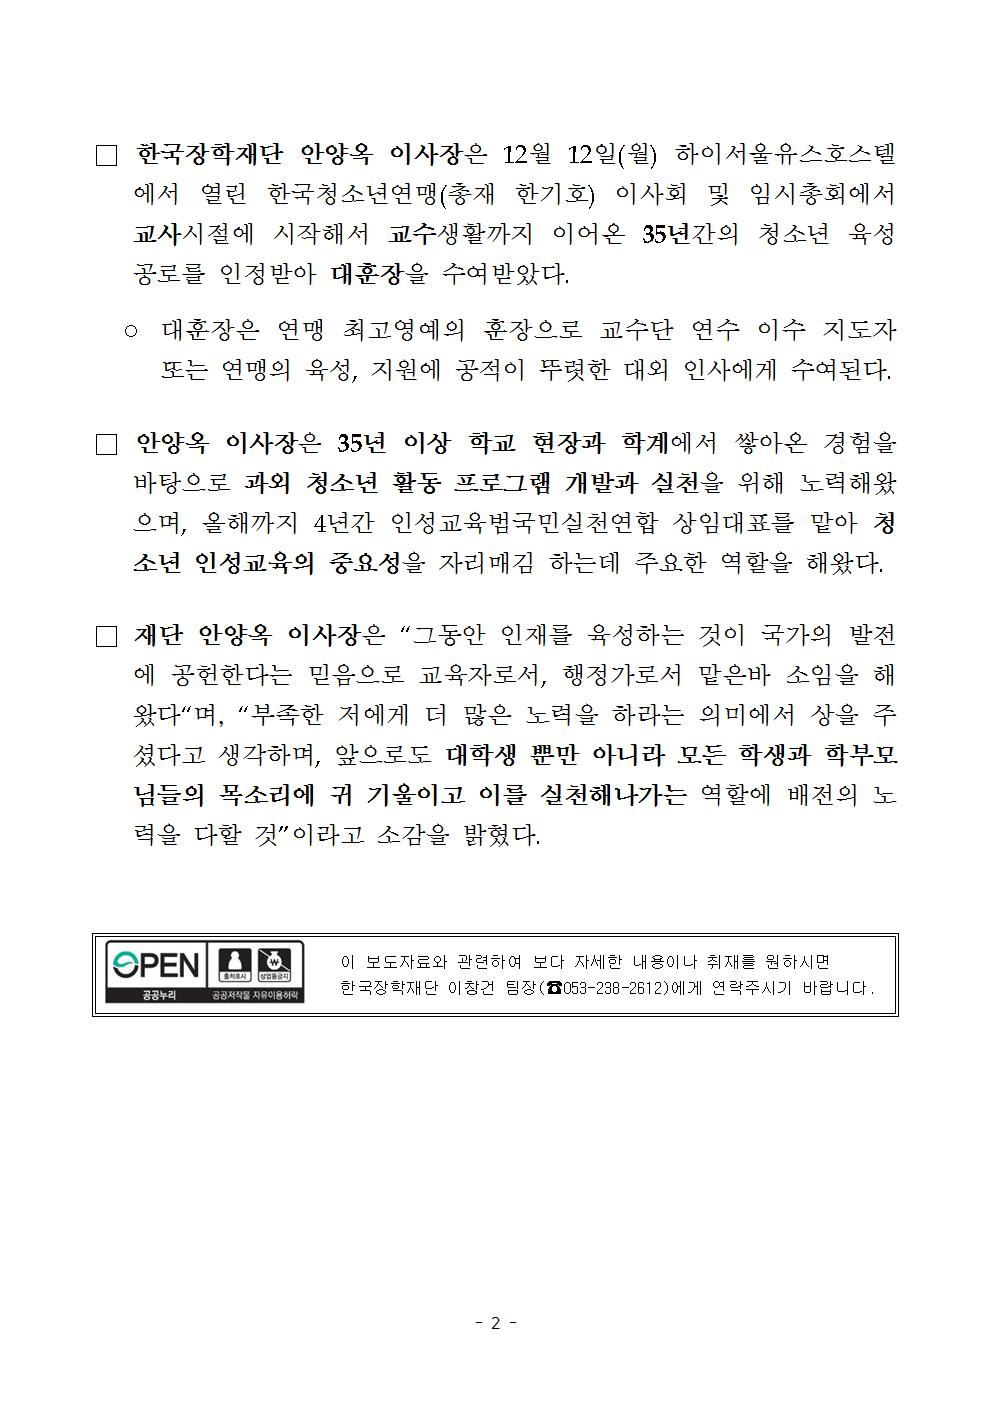 [보도자료] 안양옥 이사장, 한국청소년연맹 대훈장 수여 관련 내용 두번째 이미지입니다. 자세한 내용은 아래를 참고하세요.